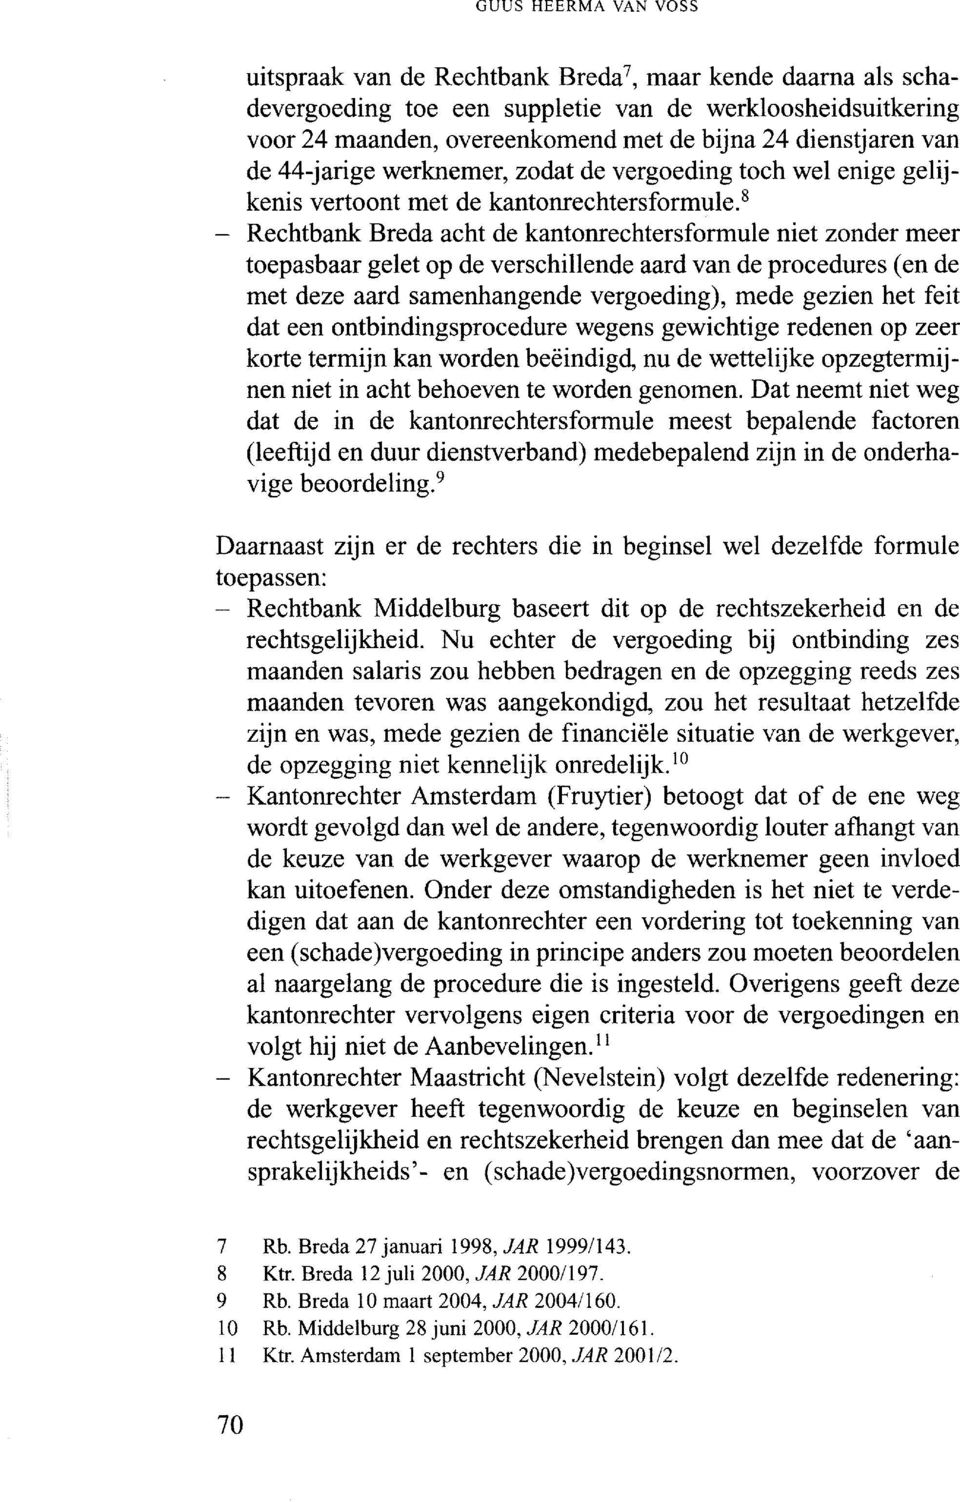 " - Rechtbank Breda acht de kantonrechtersformule niet zonder meer toepasbaar gelet op de verschillende aard van de procedures (en de met deze aard samenhangende vergoeding), mede gezien het feit dat